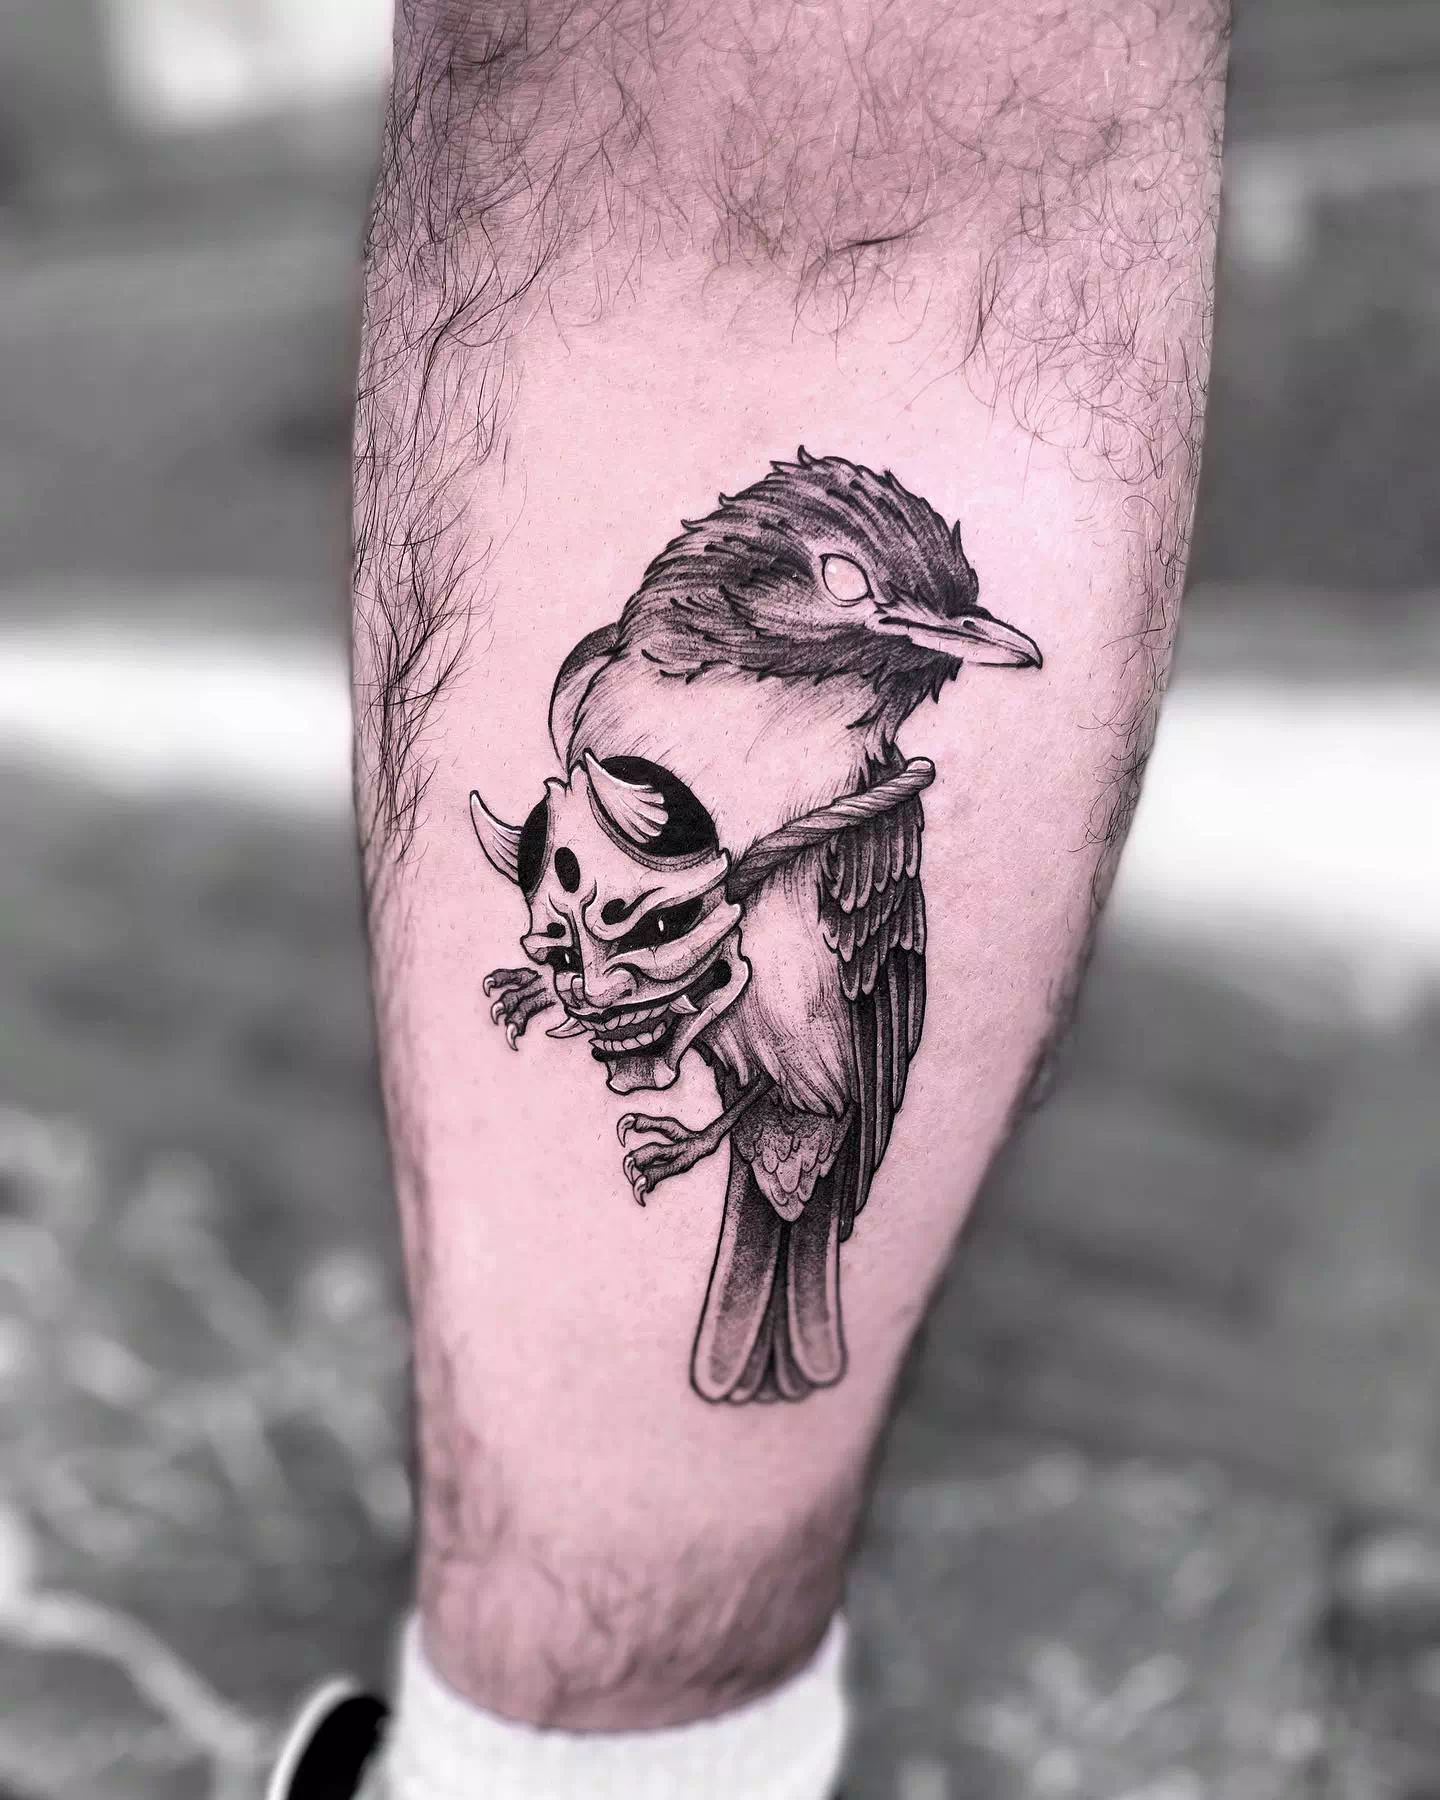 Vogel-Tattoos in Schwarz und Weiß 1